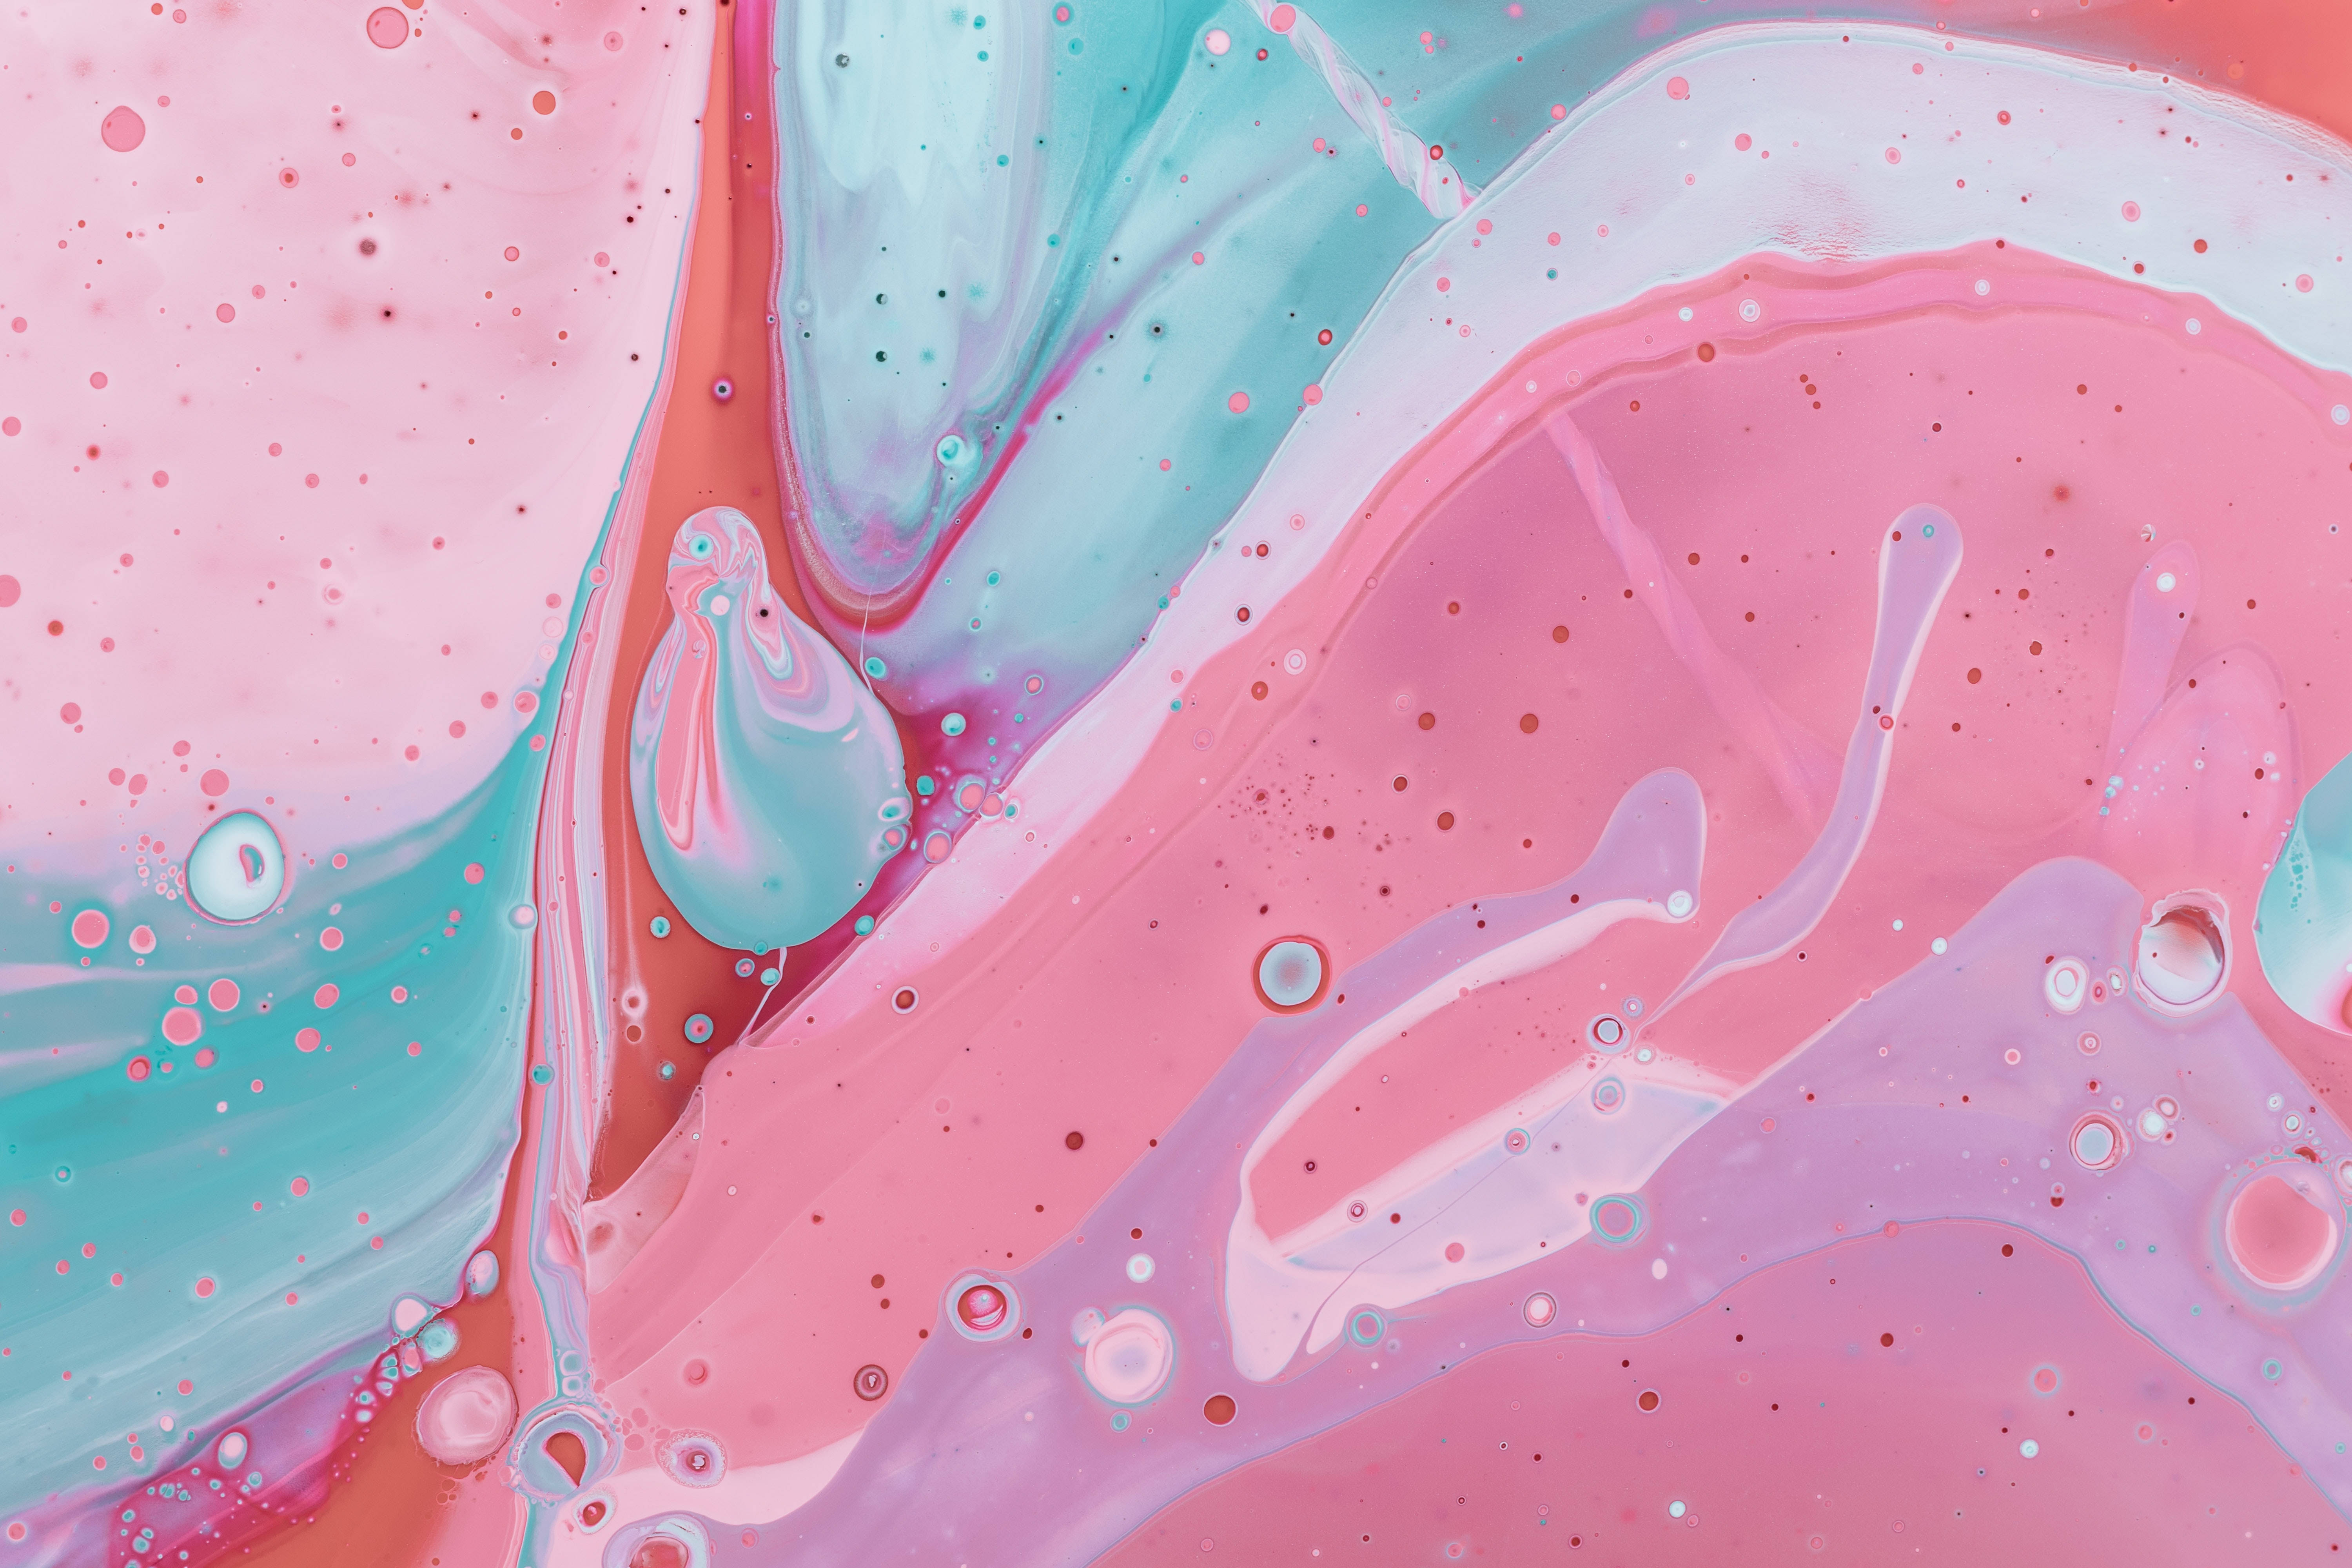 Impressionanteimmagine 4k Di Schizzi Di Vernice Rosa Su Superficie Marmorea. Sfondo